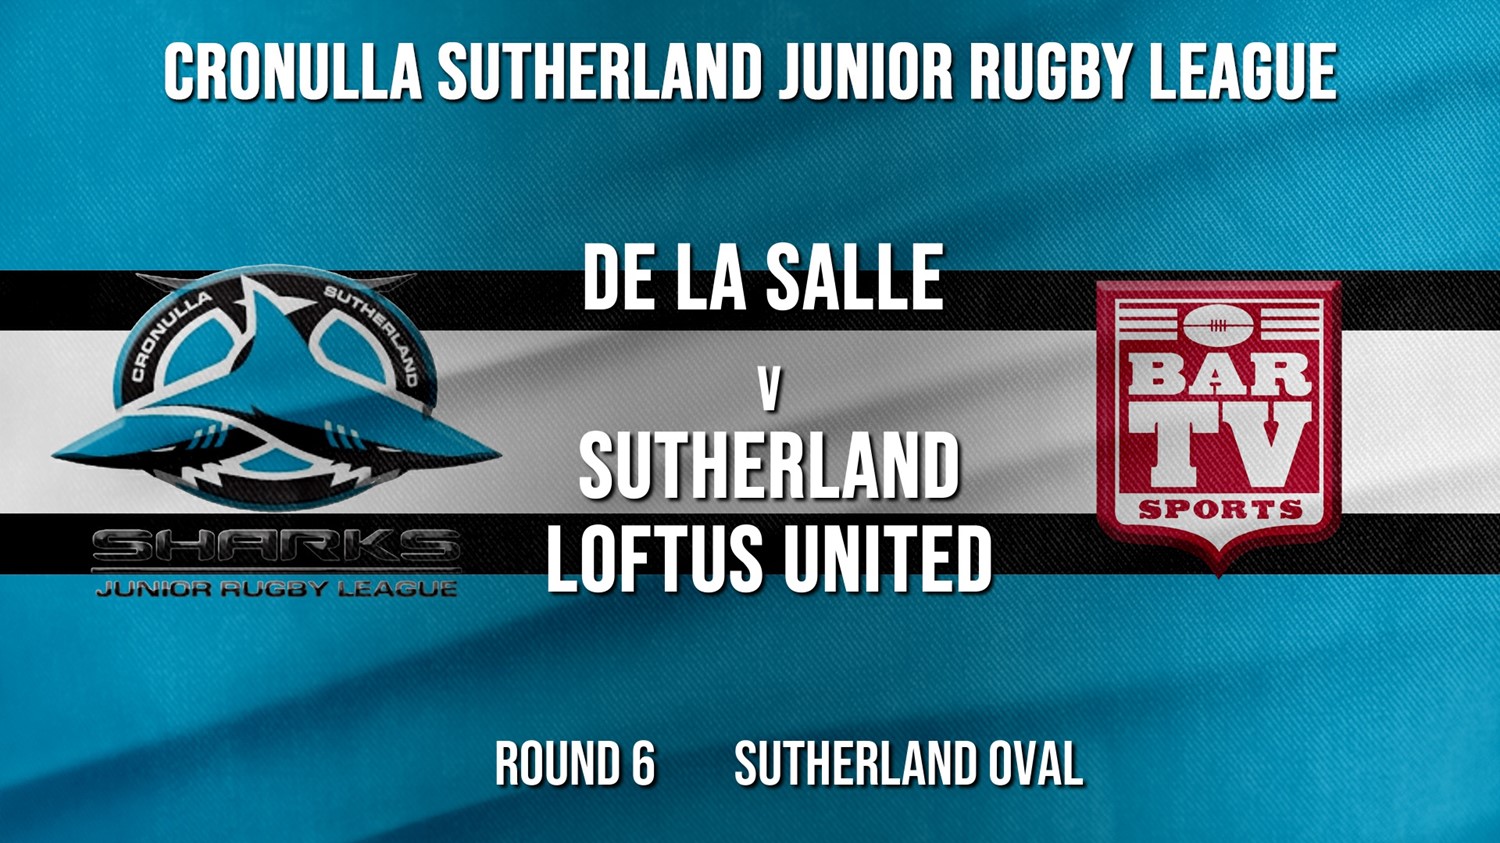 Cronulla JRL Round 6 - U/9 - De La Salle v Sutherland Loftus United Minigame Slate Image